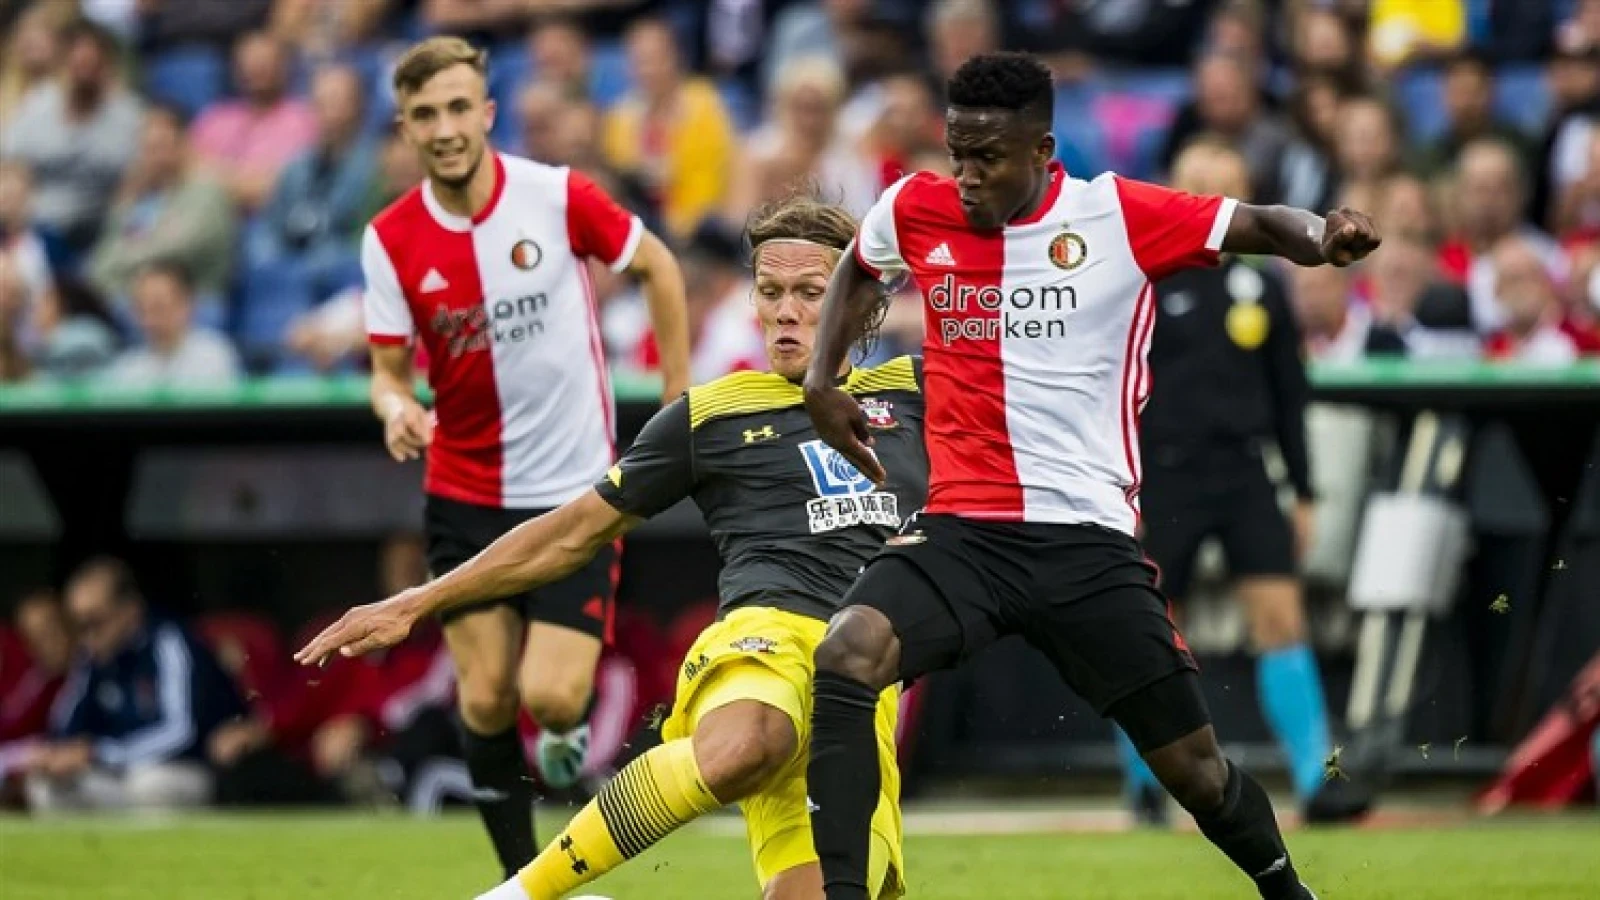 Slecht nieuws voor Feyenoord, nieuw blessuregeval na wedstrijd tegen Rangers FC